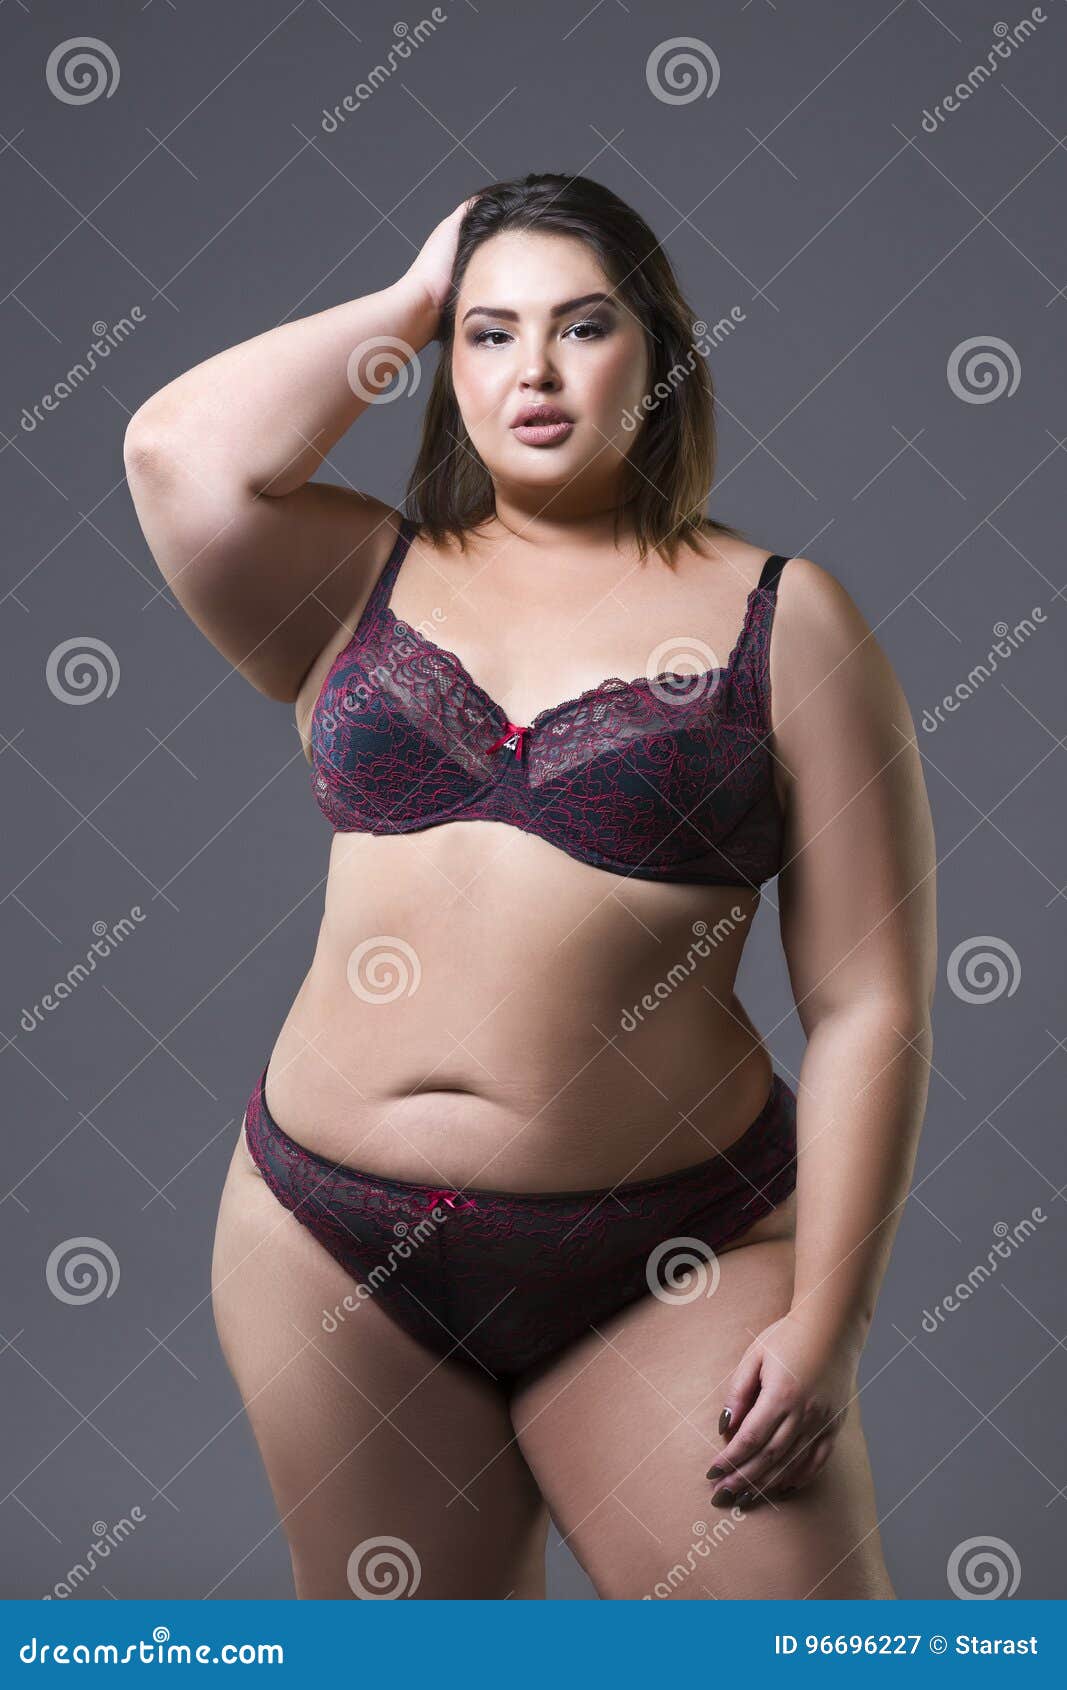 ben beckett share fat lady in panties photos